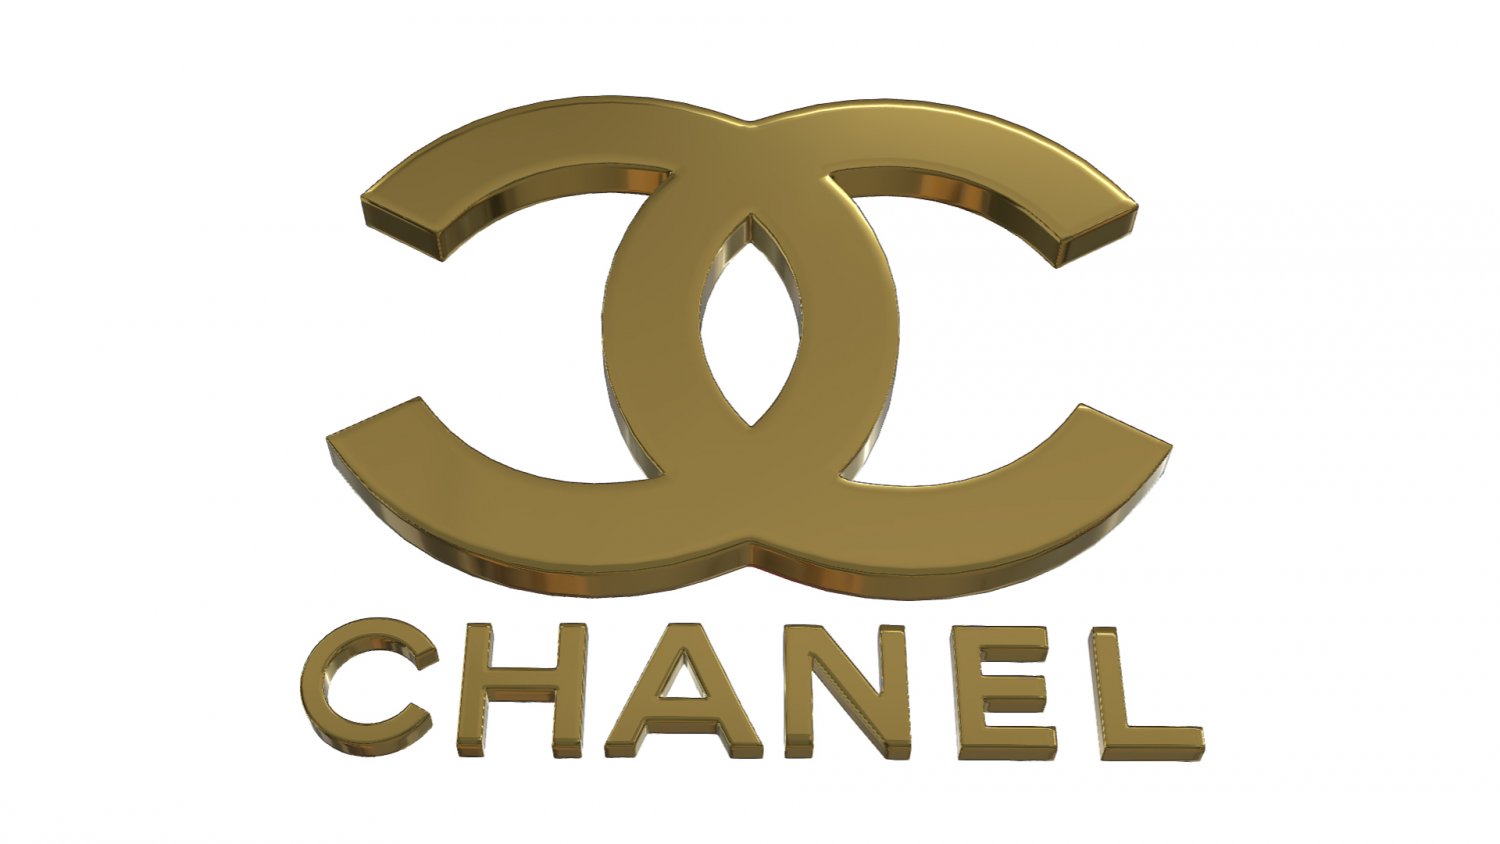 Круг шанель текст. Шанель логотип. Шанель 3д лого. Логотип Шанель 3d. Шанель логотип ювелирные изделия.